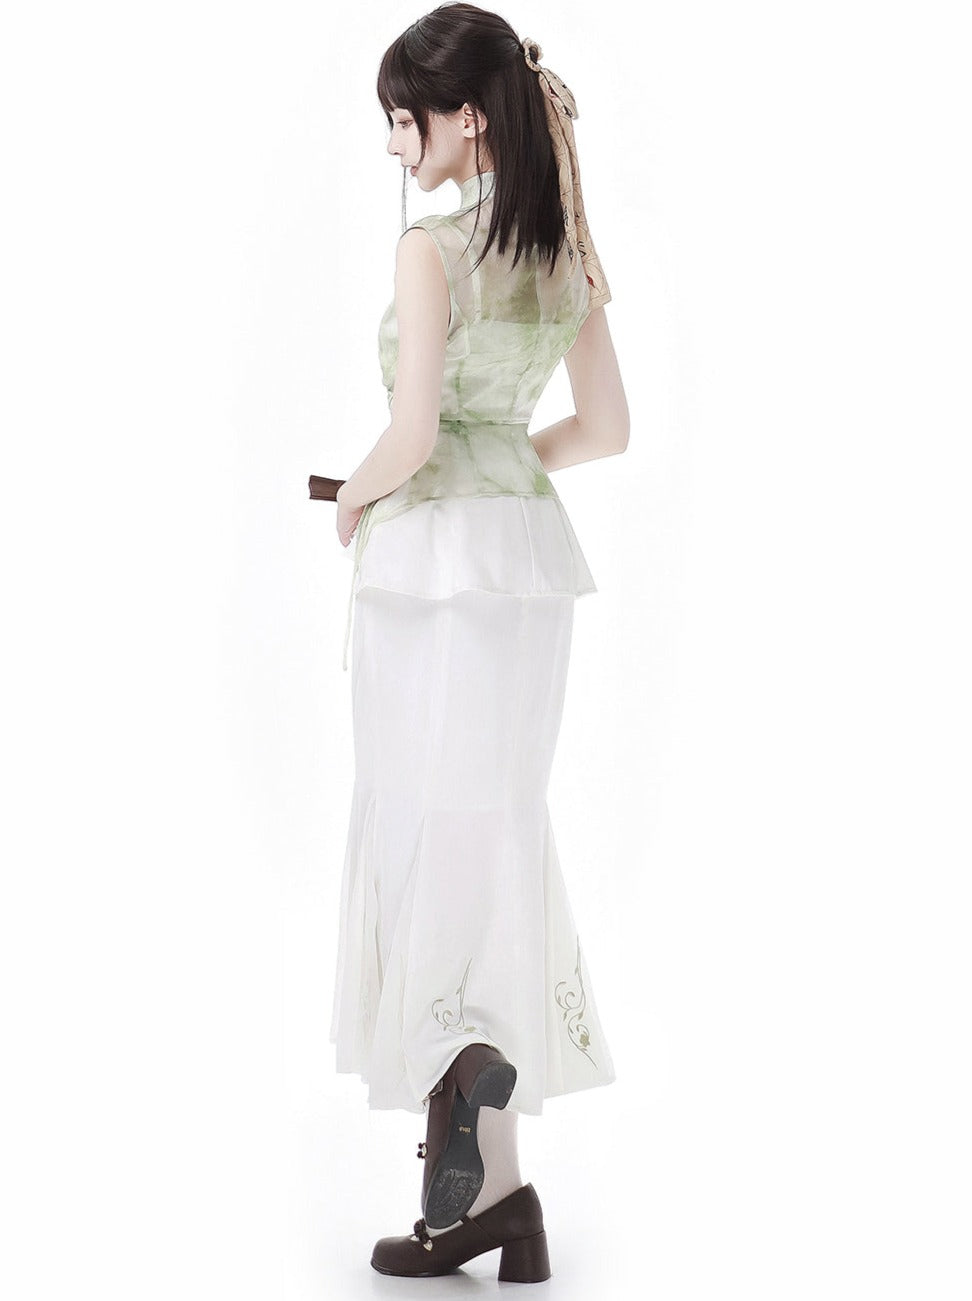 【予約商品】ホワイトグリーンノースリーブエレガントトップス+キャミソール+マーメイドスカート